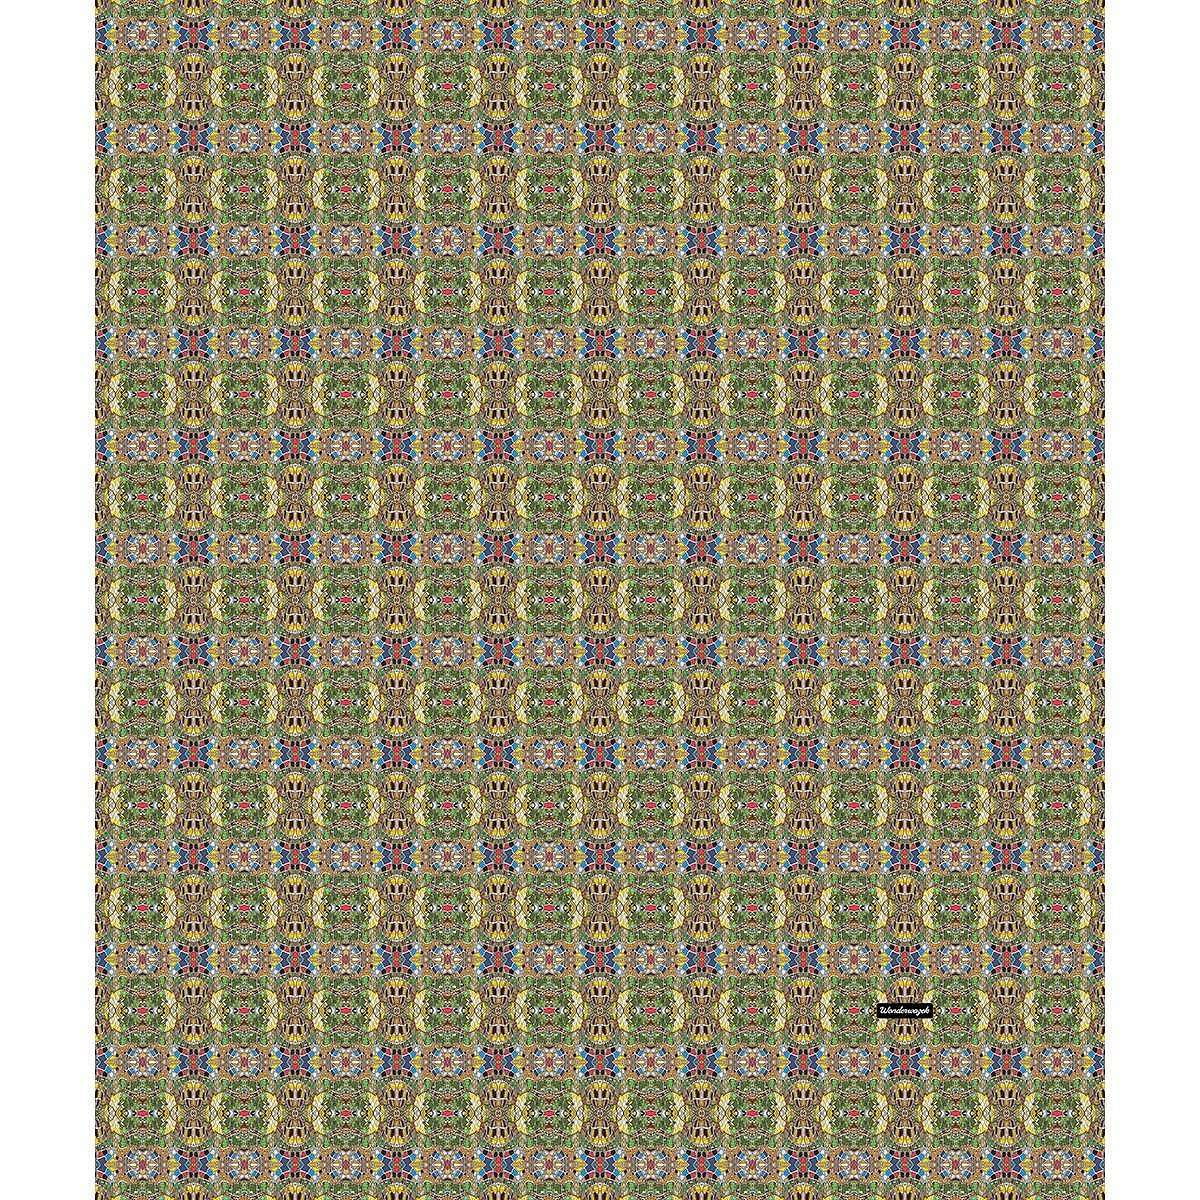 Decke • Puzzle – Variation 2, blau, gelb, grün, rot - Wonderwazek